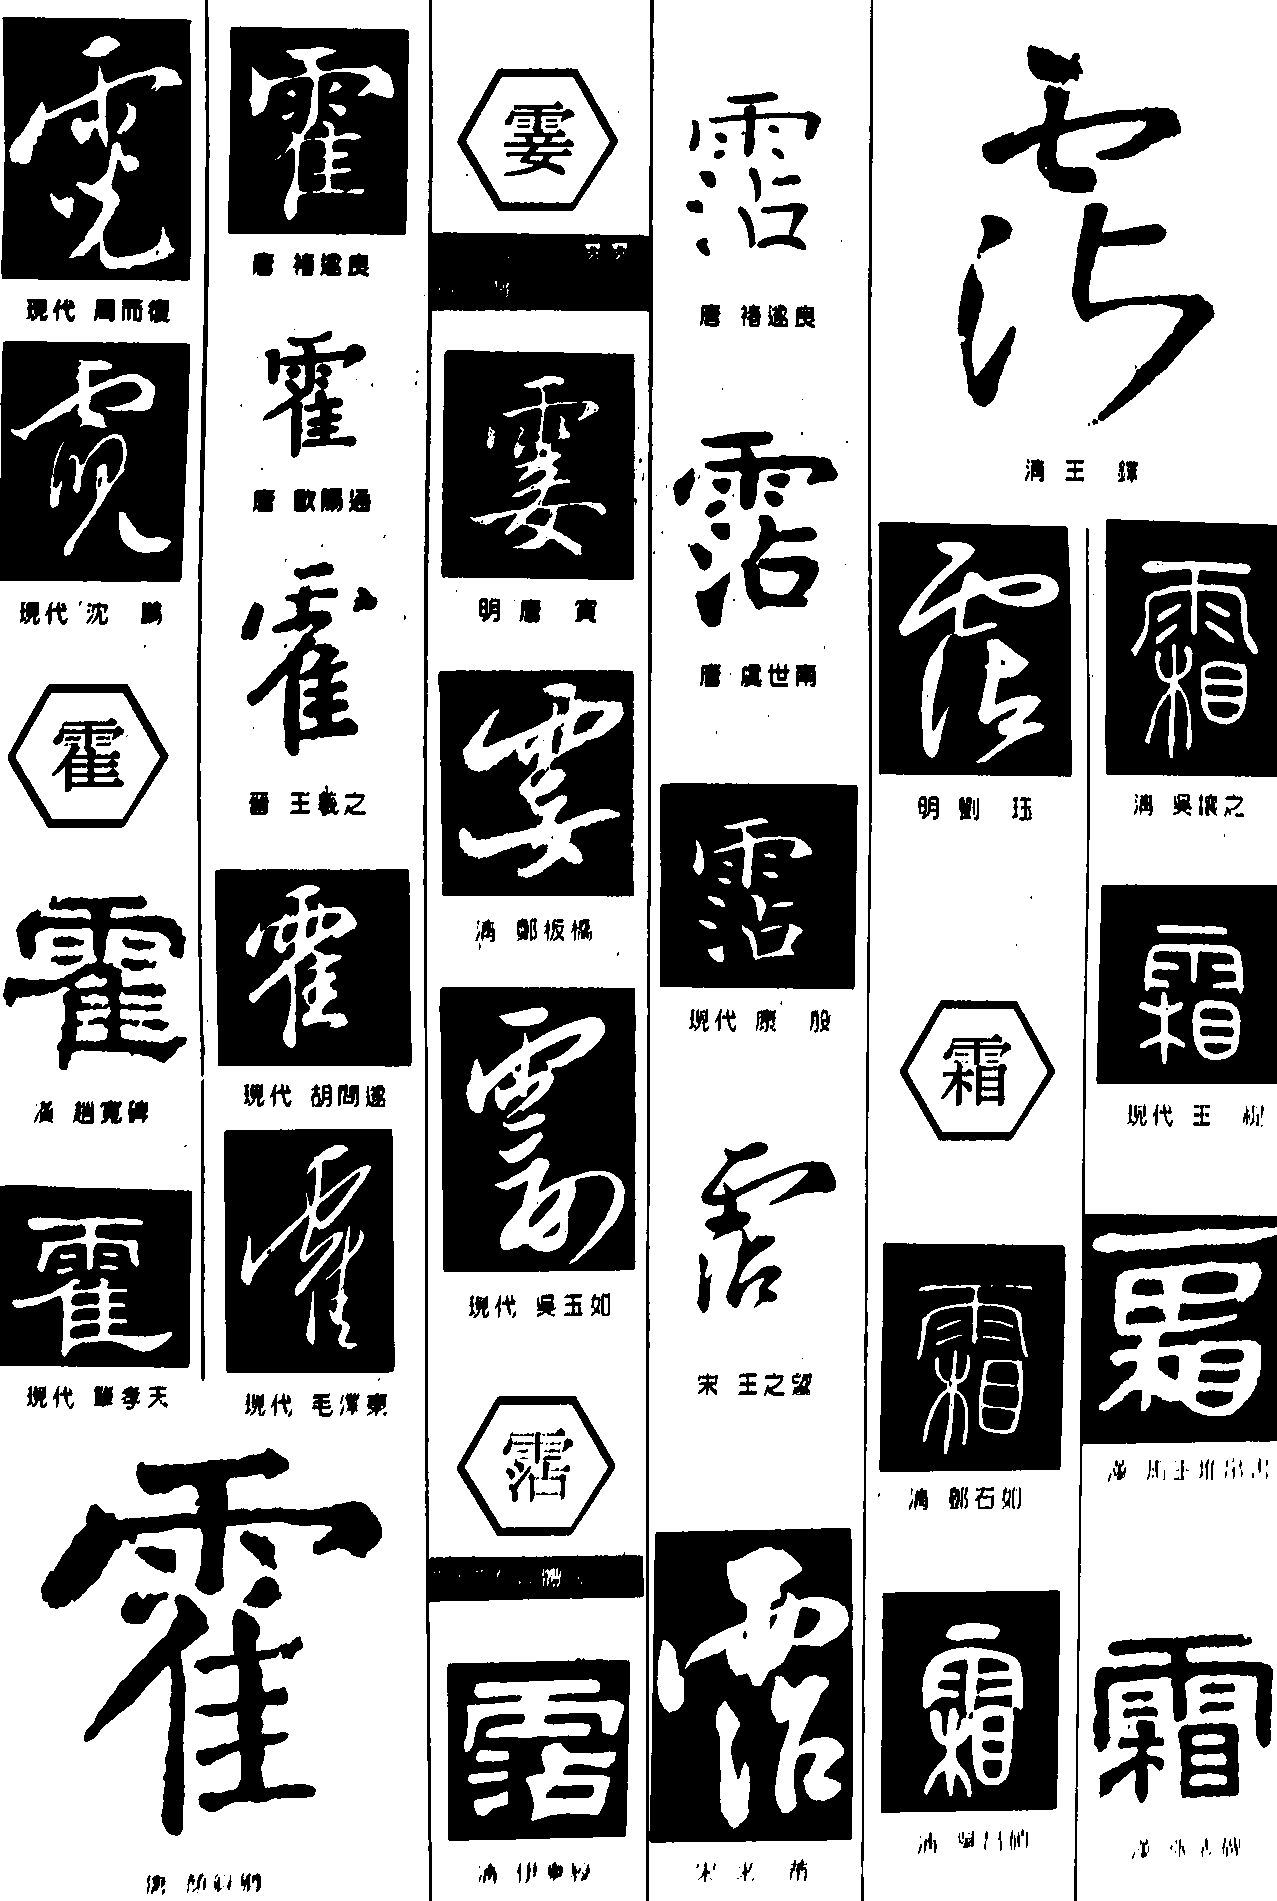 霓霍霎�霜 艺术字 毛笔字 书法字 繁体 标志设计 